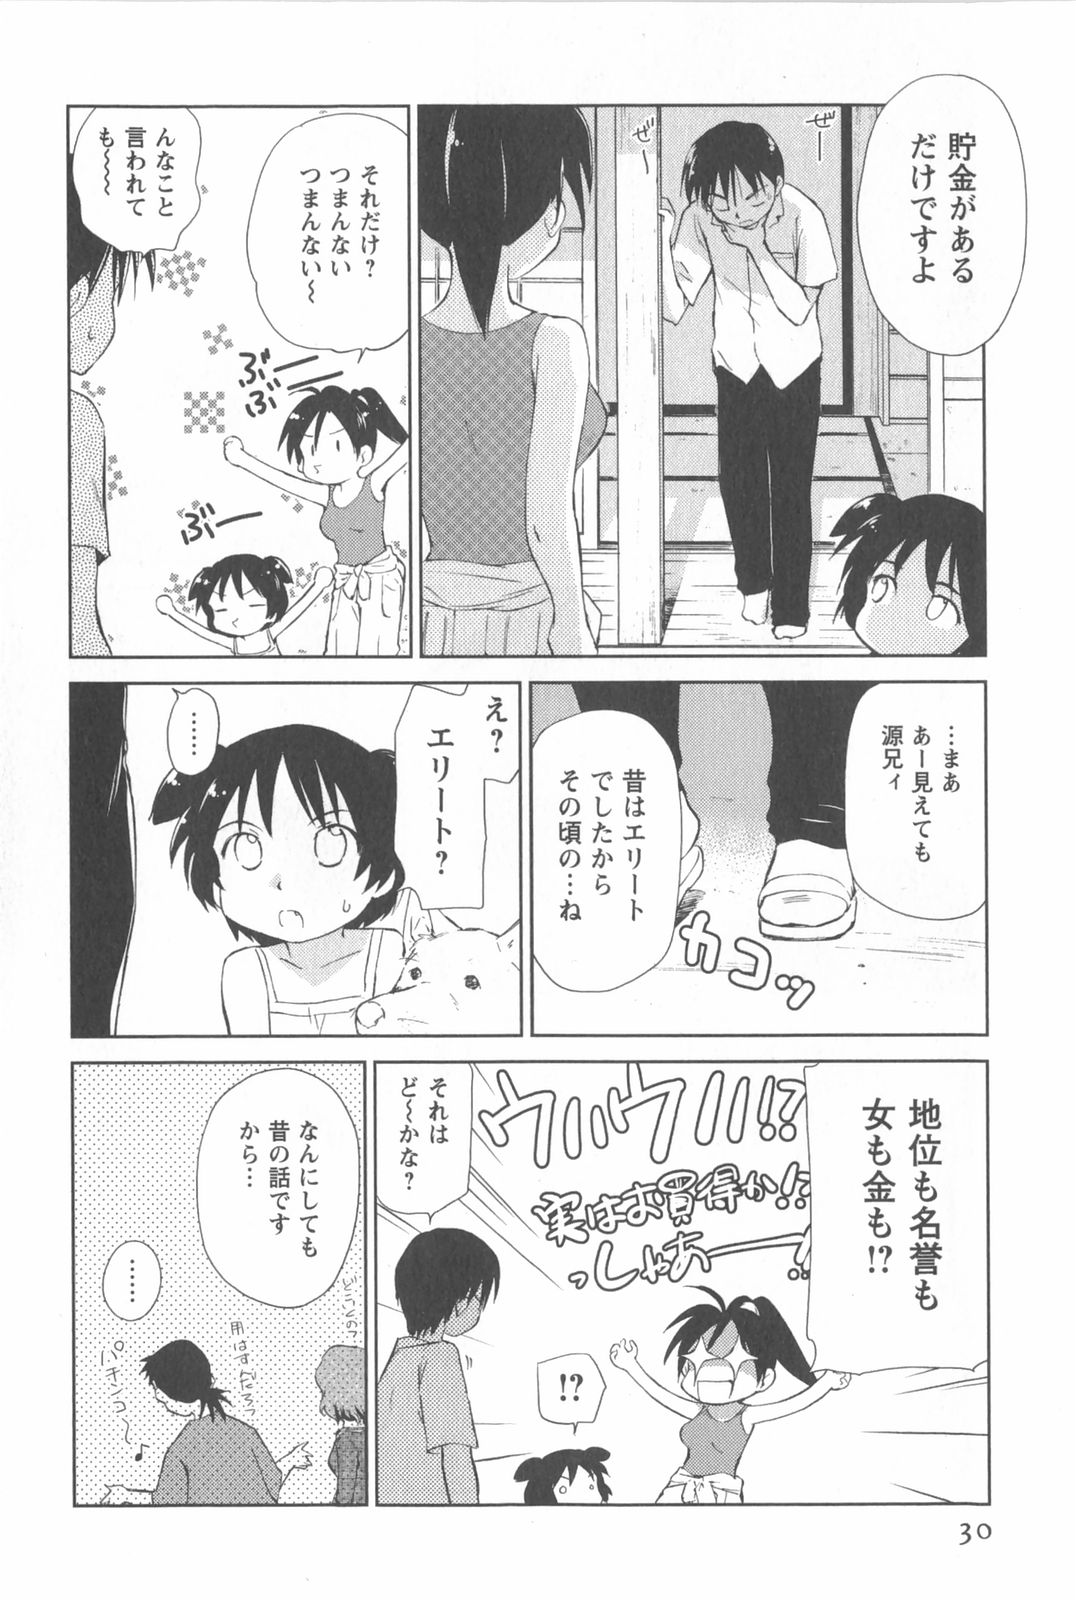 [Mutsuki Tsutomu] Momoiro Peanuts Vol. 2 page 33 full